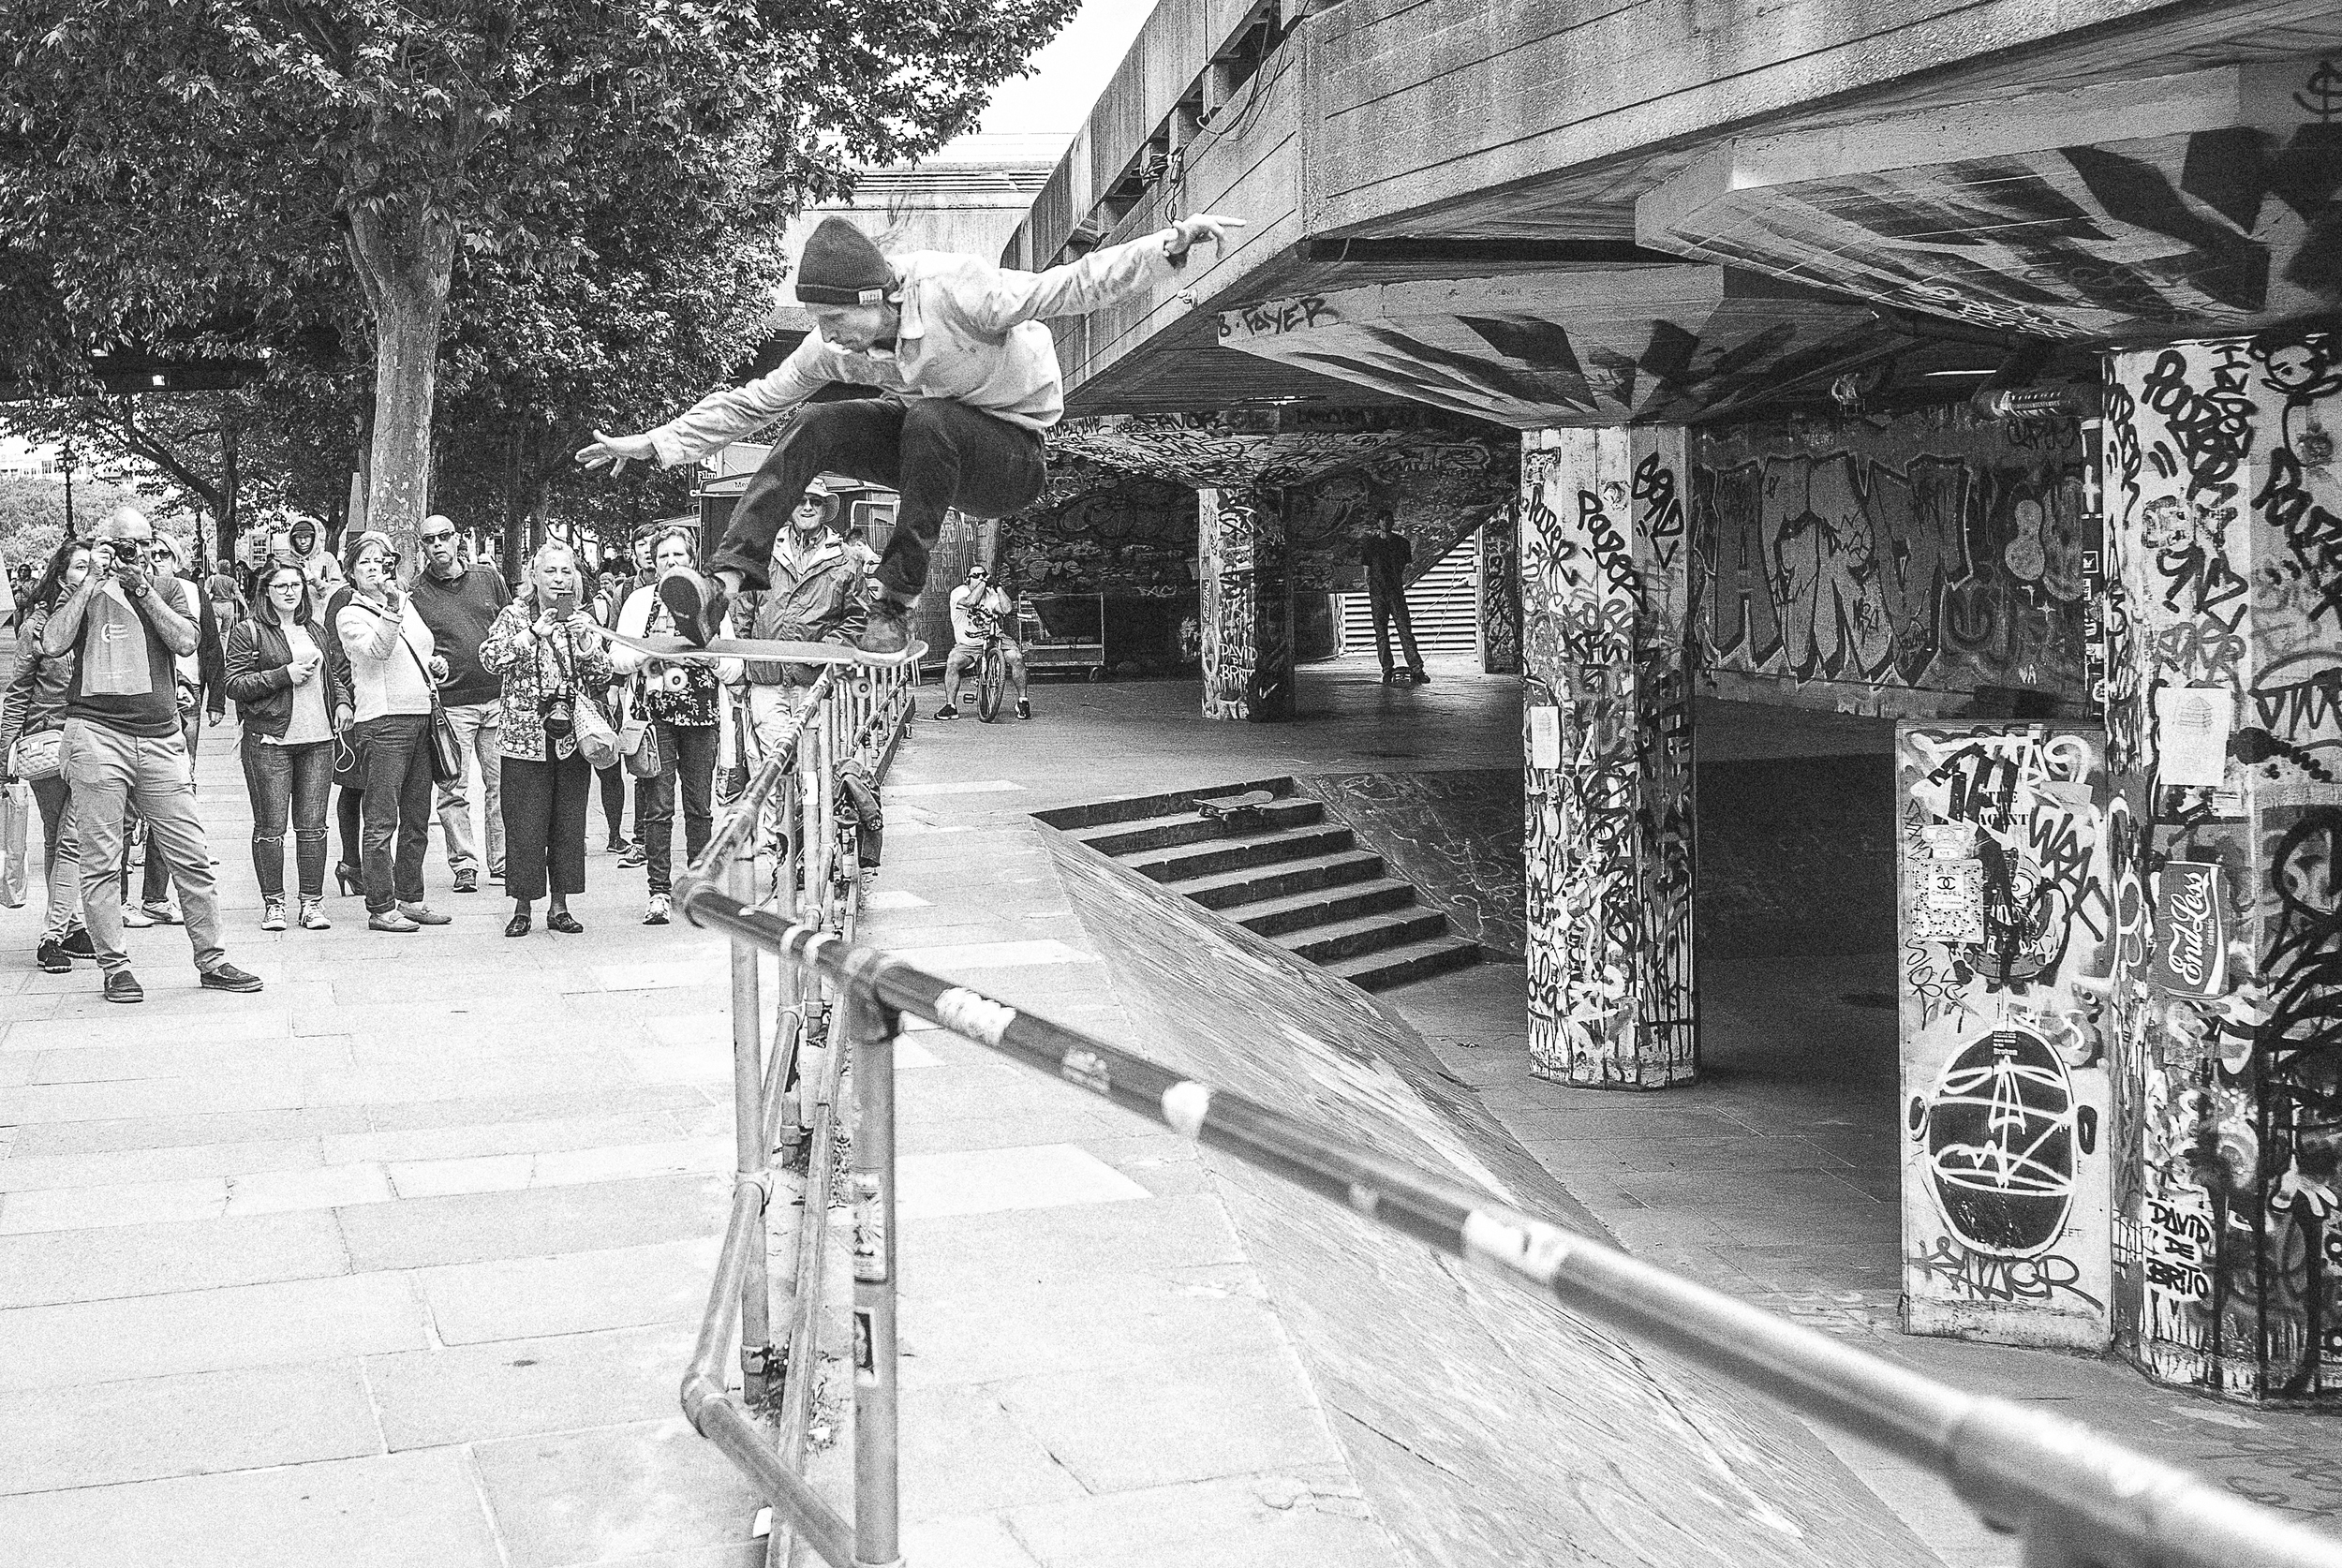 Skate or Die, South Bank London